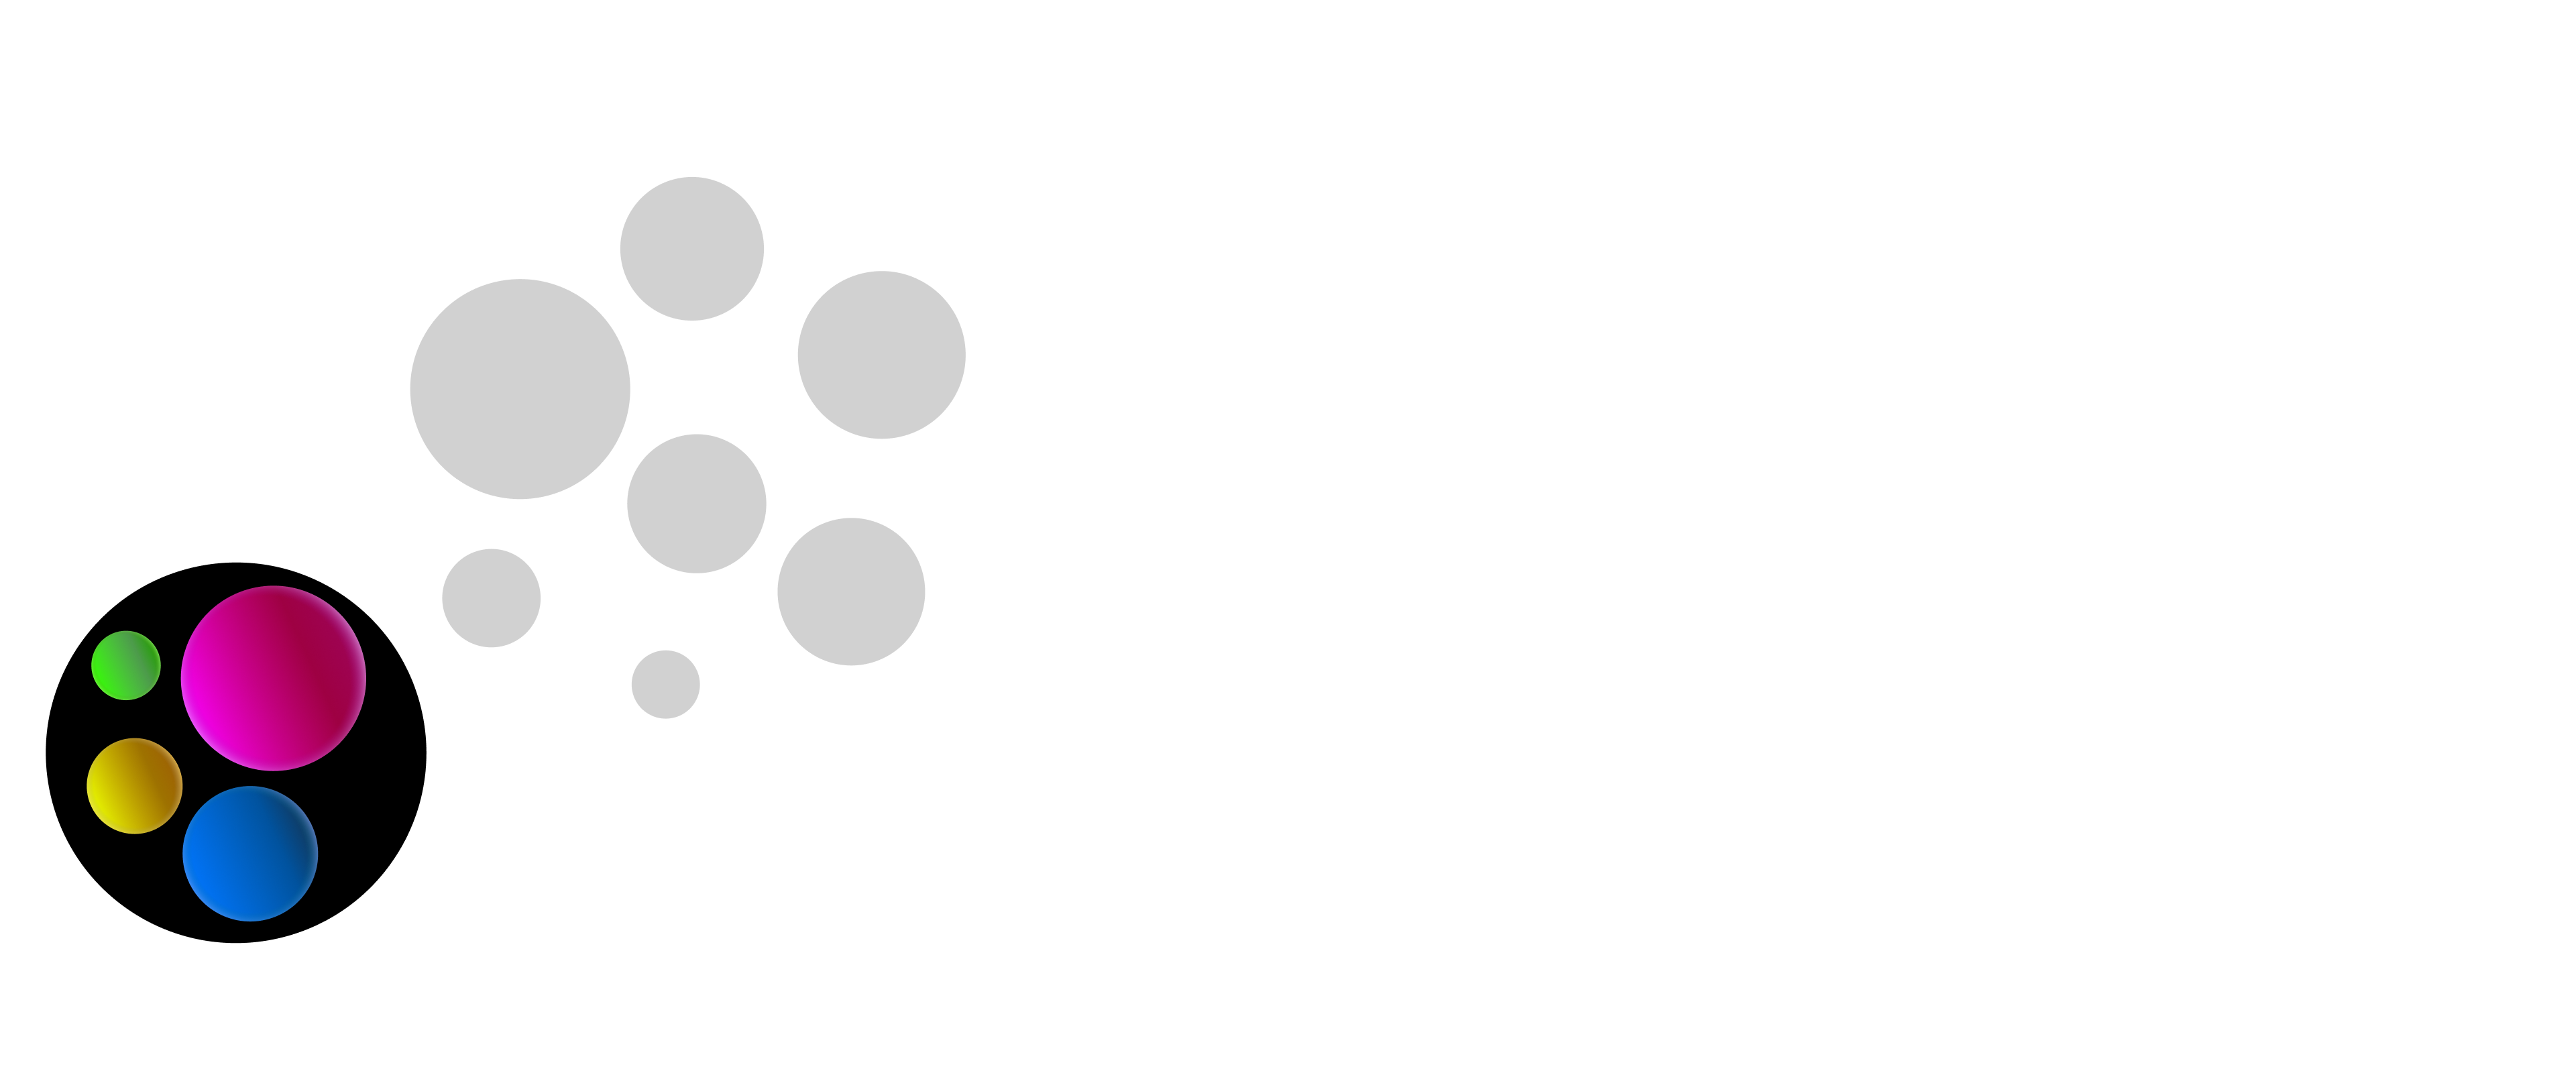 Cette image représente, de manière plus explicite, l’intégration. Elle montre une sphère gris clair, avec des sphères plus sombres. Contrairement à la séparation, la sphère noire qui comporte des sphères colorées est à l’intérieur de la sphère grise. Cela représente la prise en compte des besoins spécifiques des utilisateurs·trices qui sont considérés dans une fonctionnalité ou un produit.